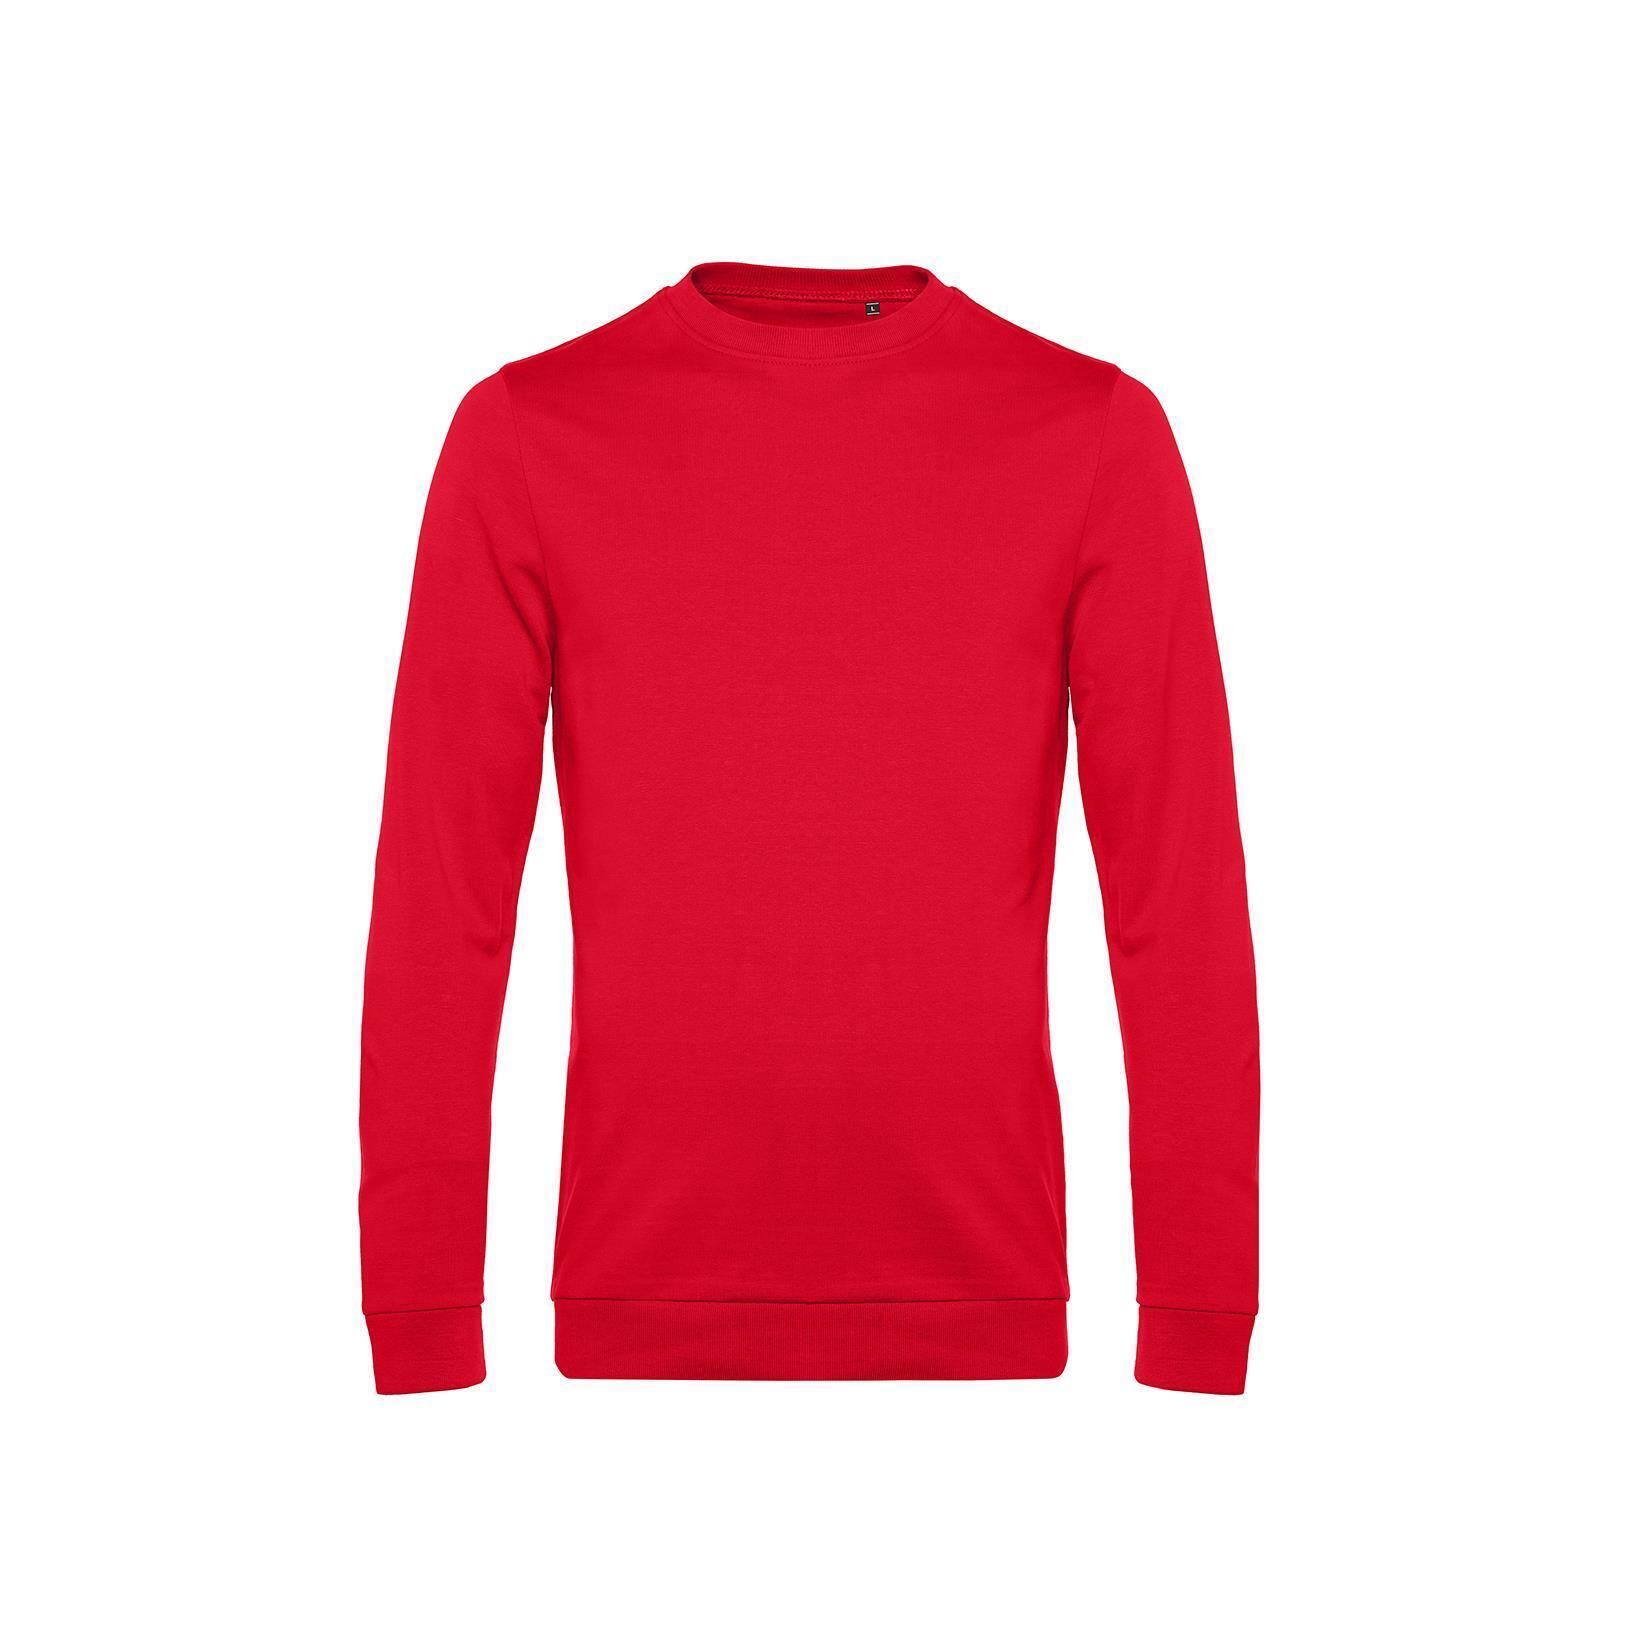 Rode Trendy Sweater sweatshirt trui unisex heren 